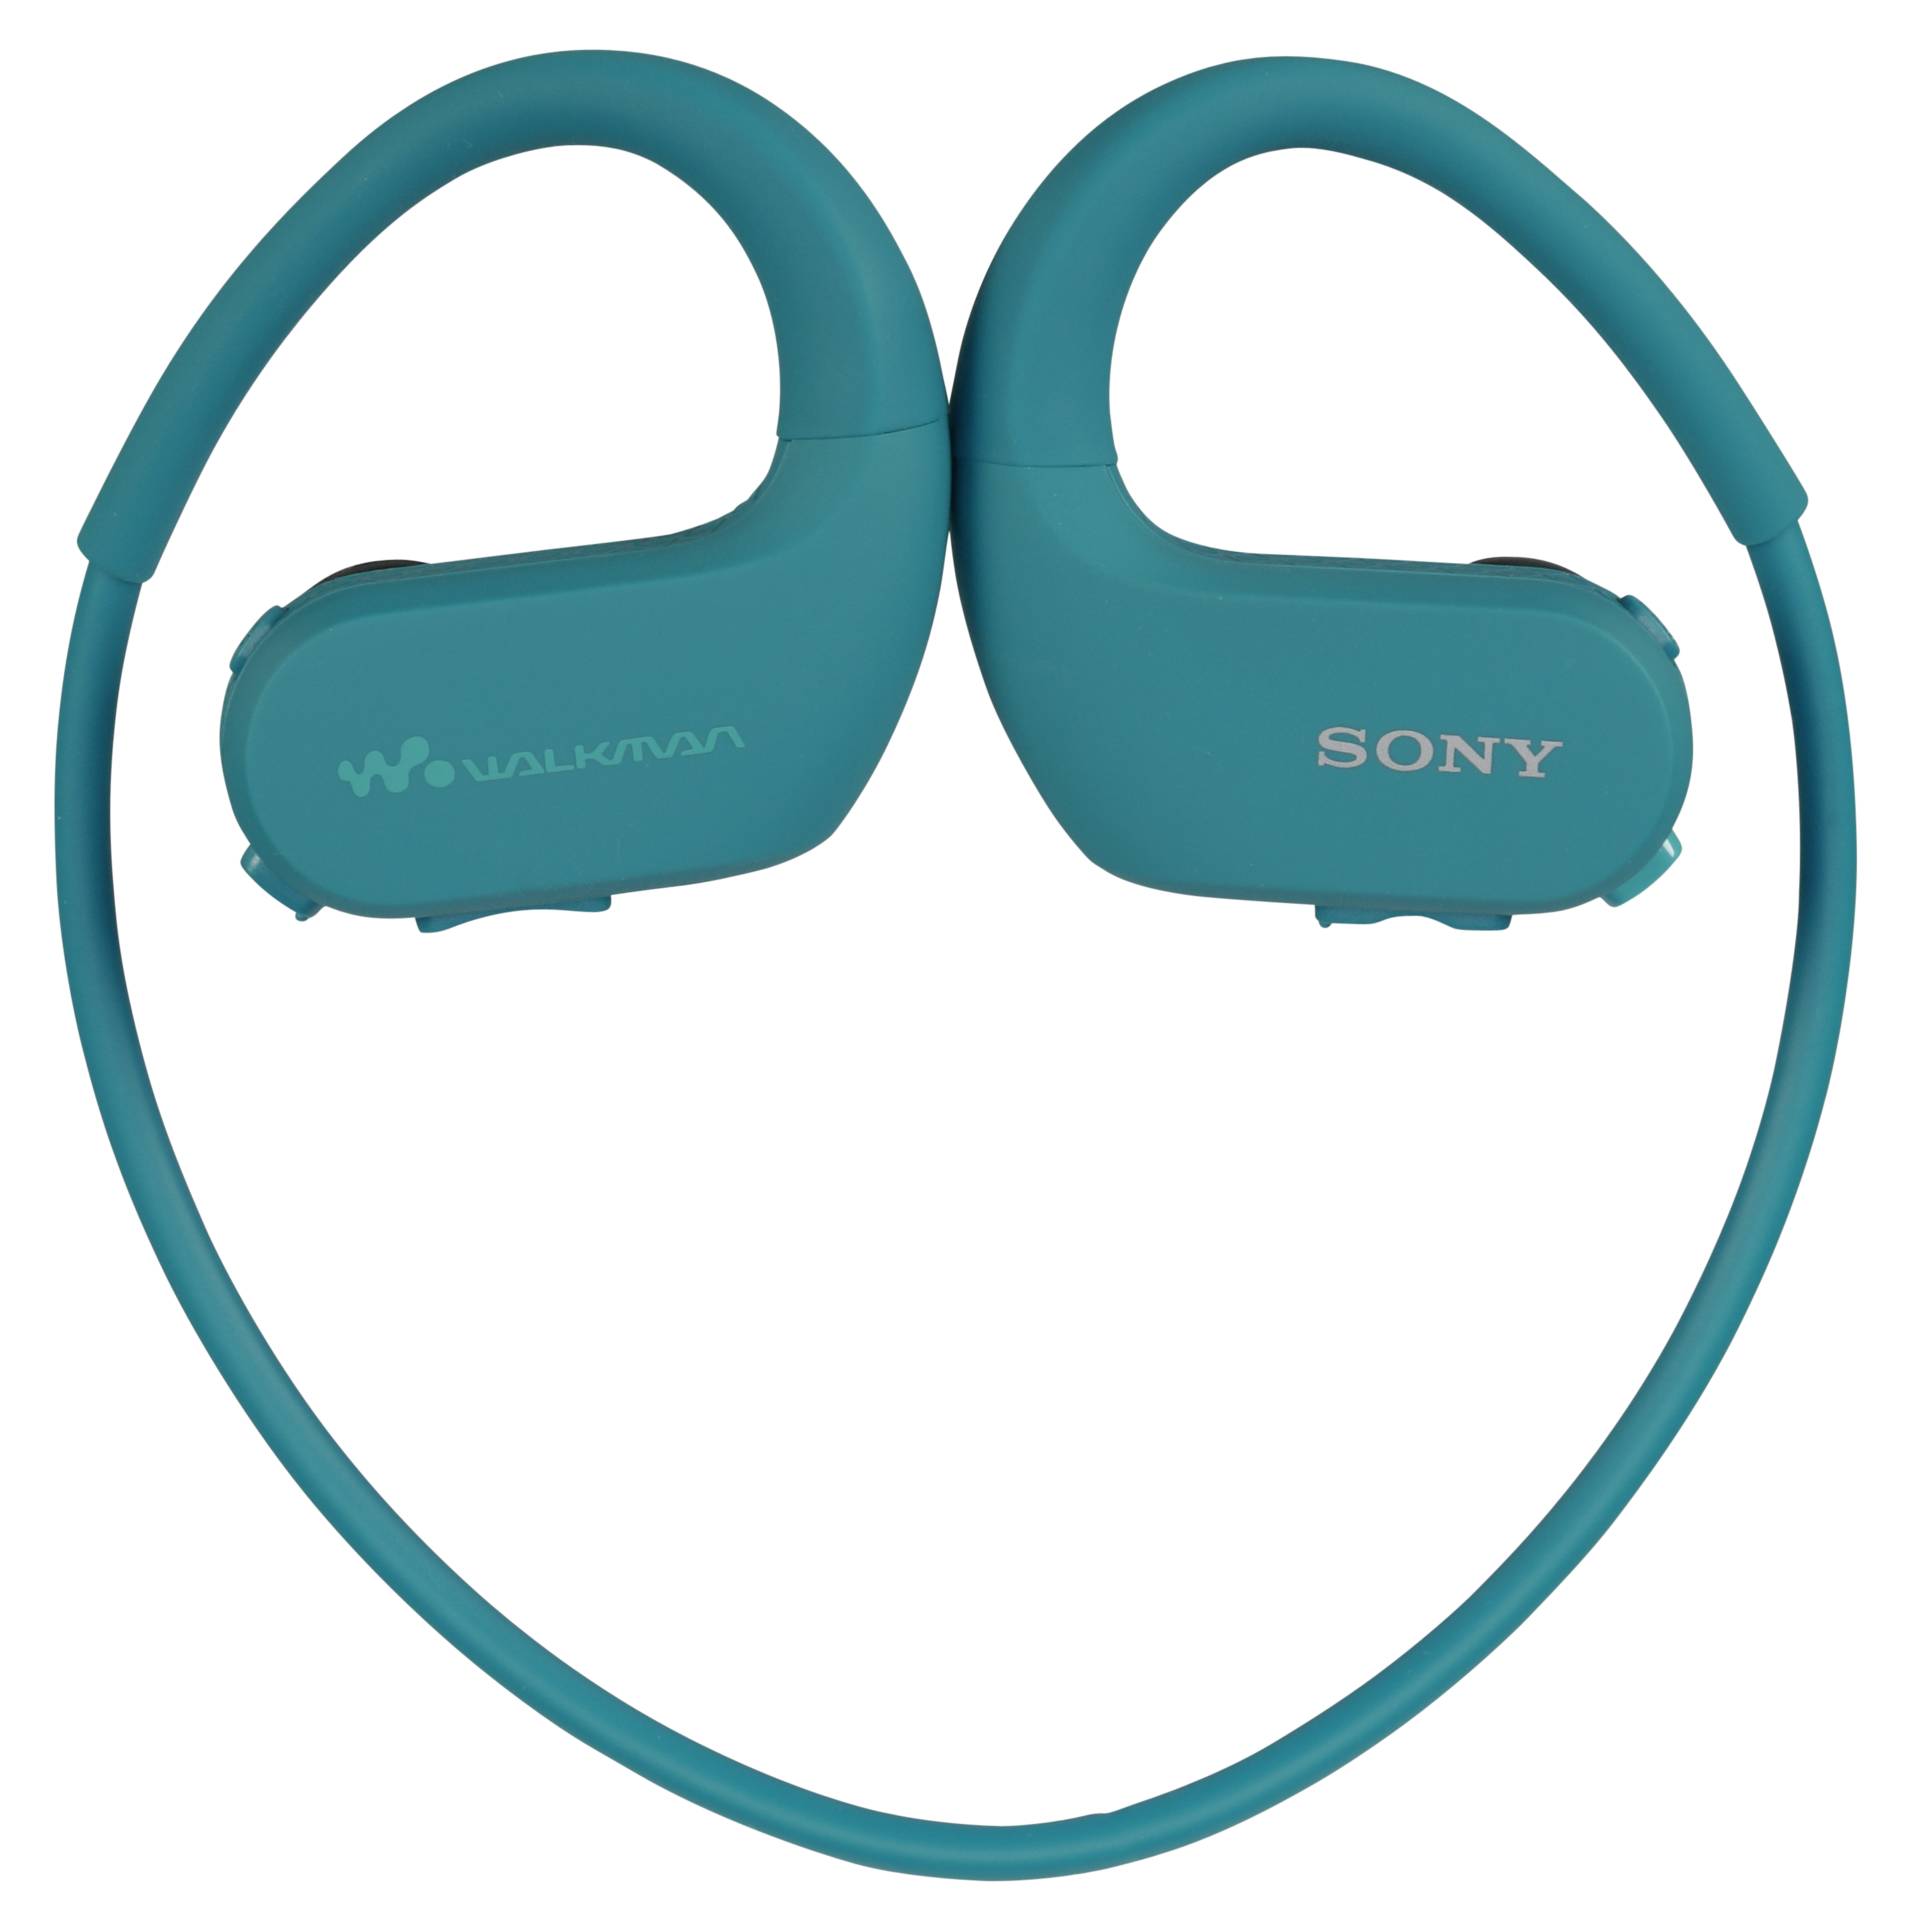 Sony NW-WS413 blau Walkman MP3-Player 